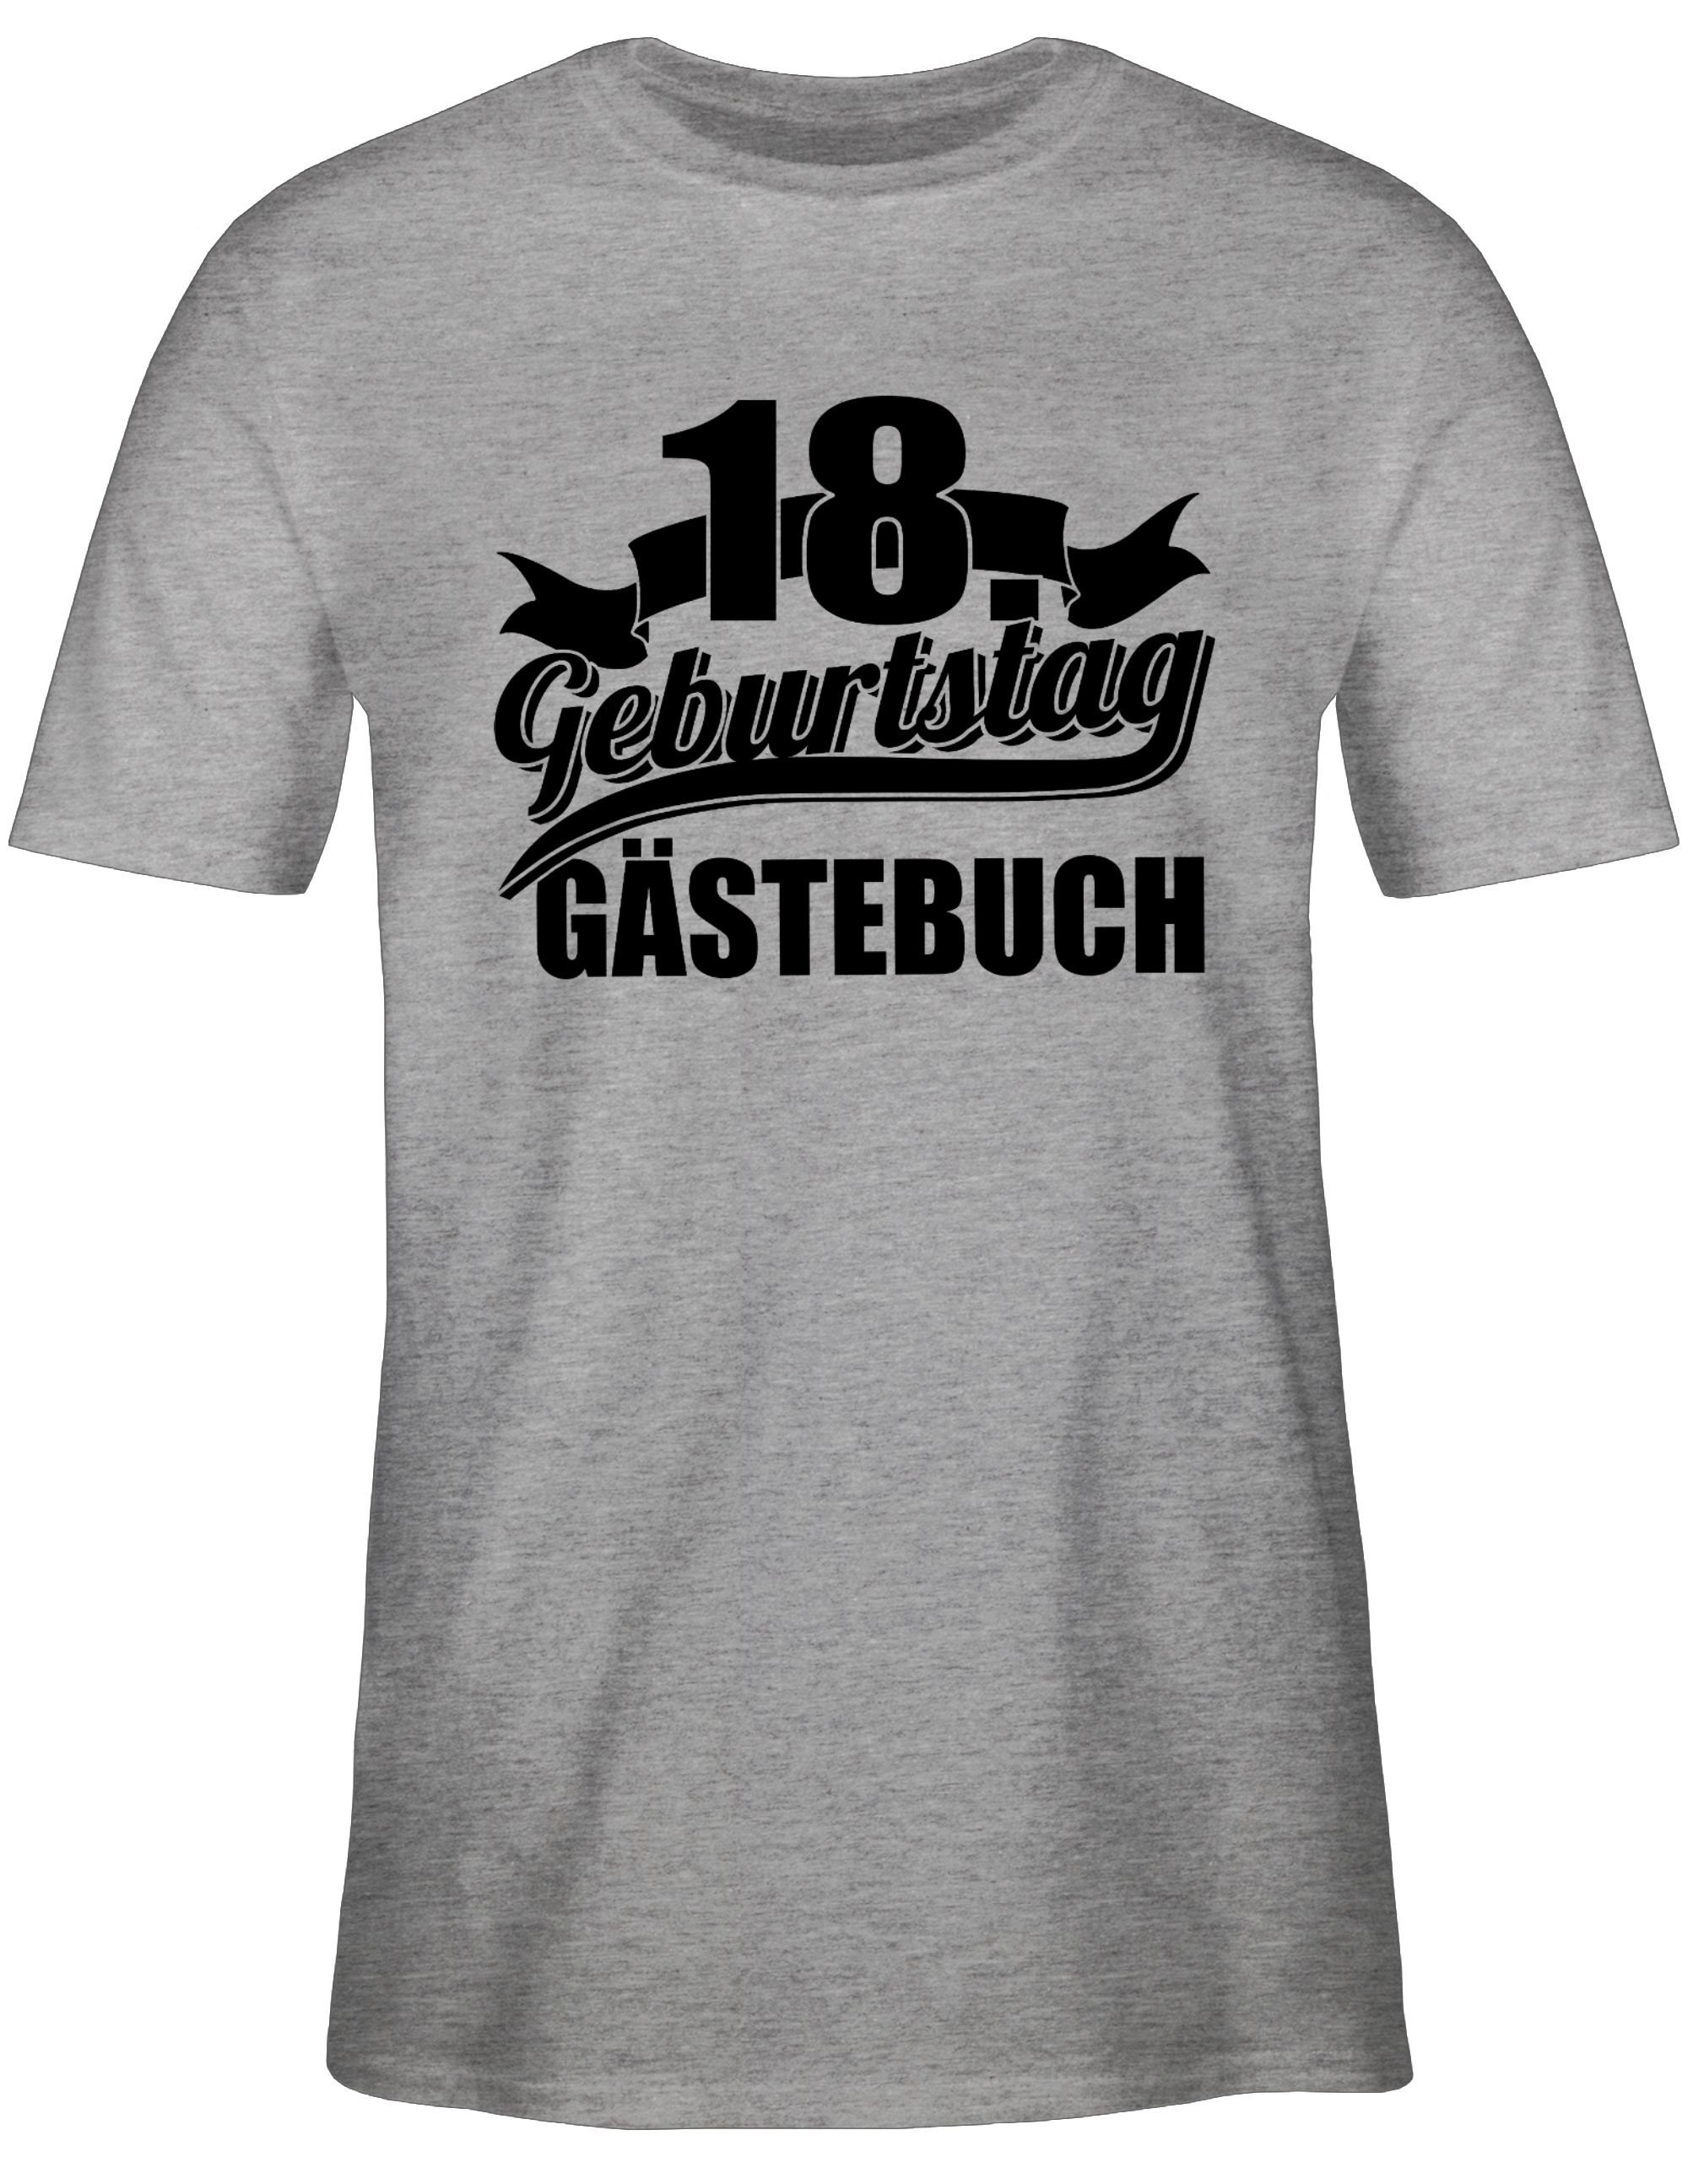 Shirtracer T-Shirt Gästebuch Achtzehnter Geburtstag 18. Geburtstag 2 Grau meliert